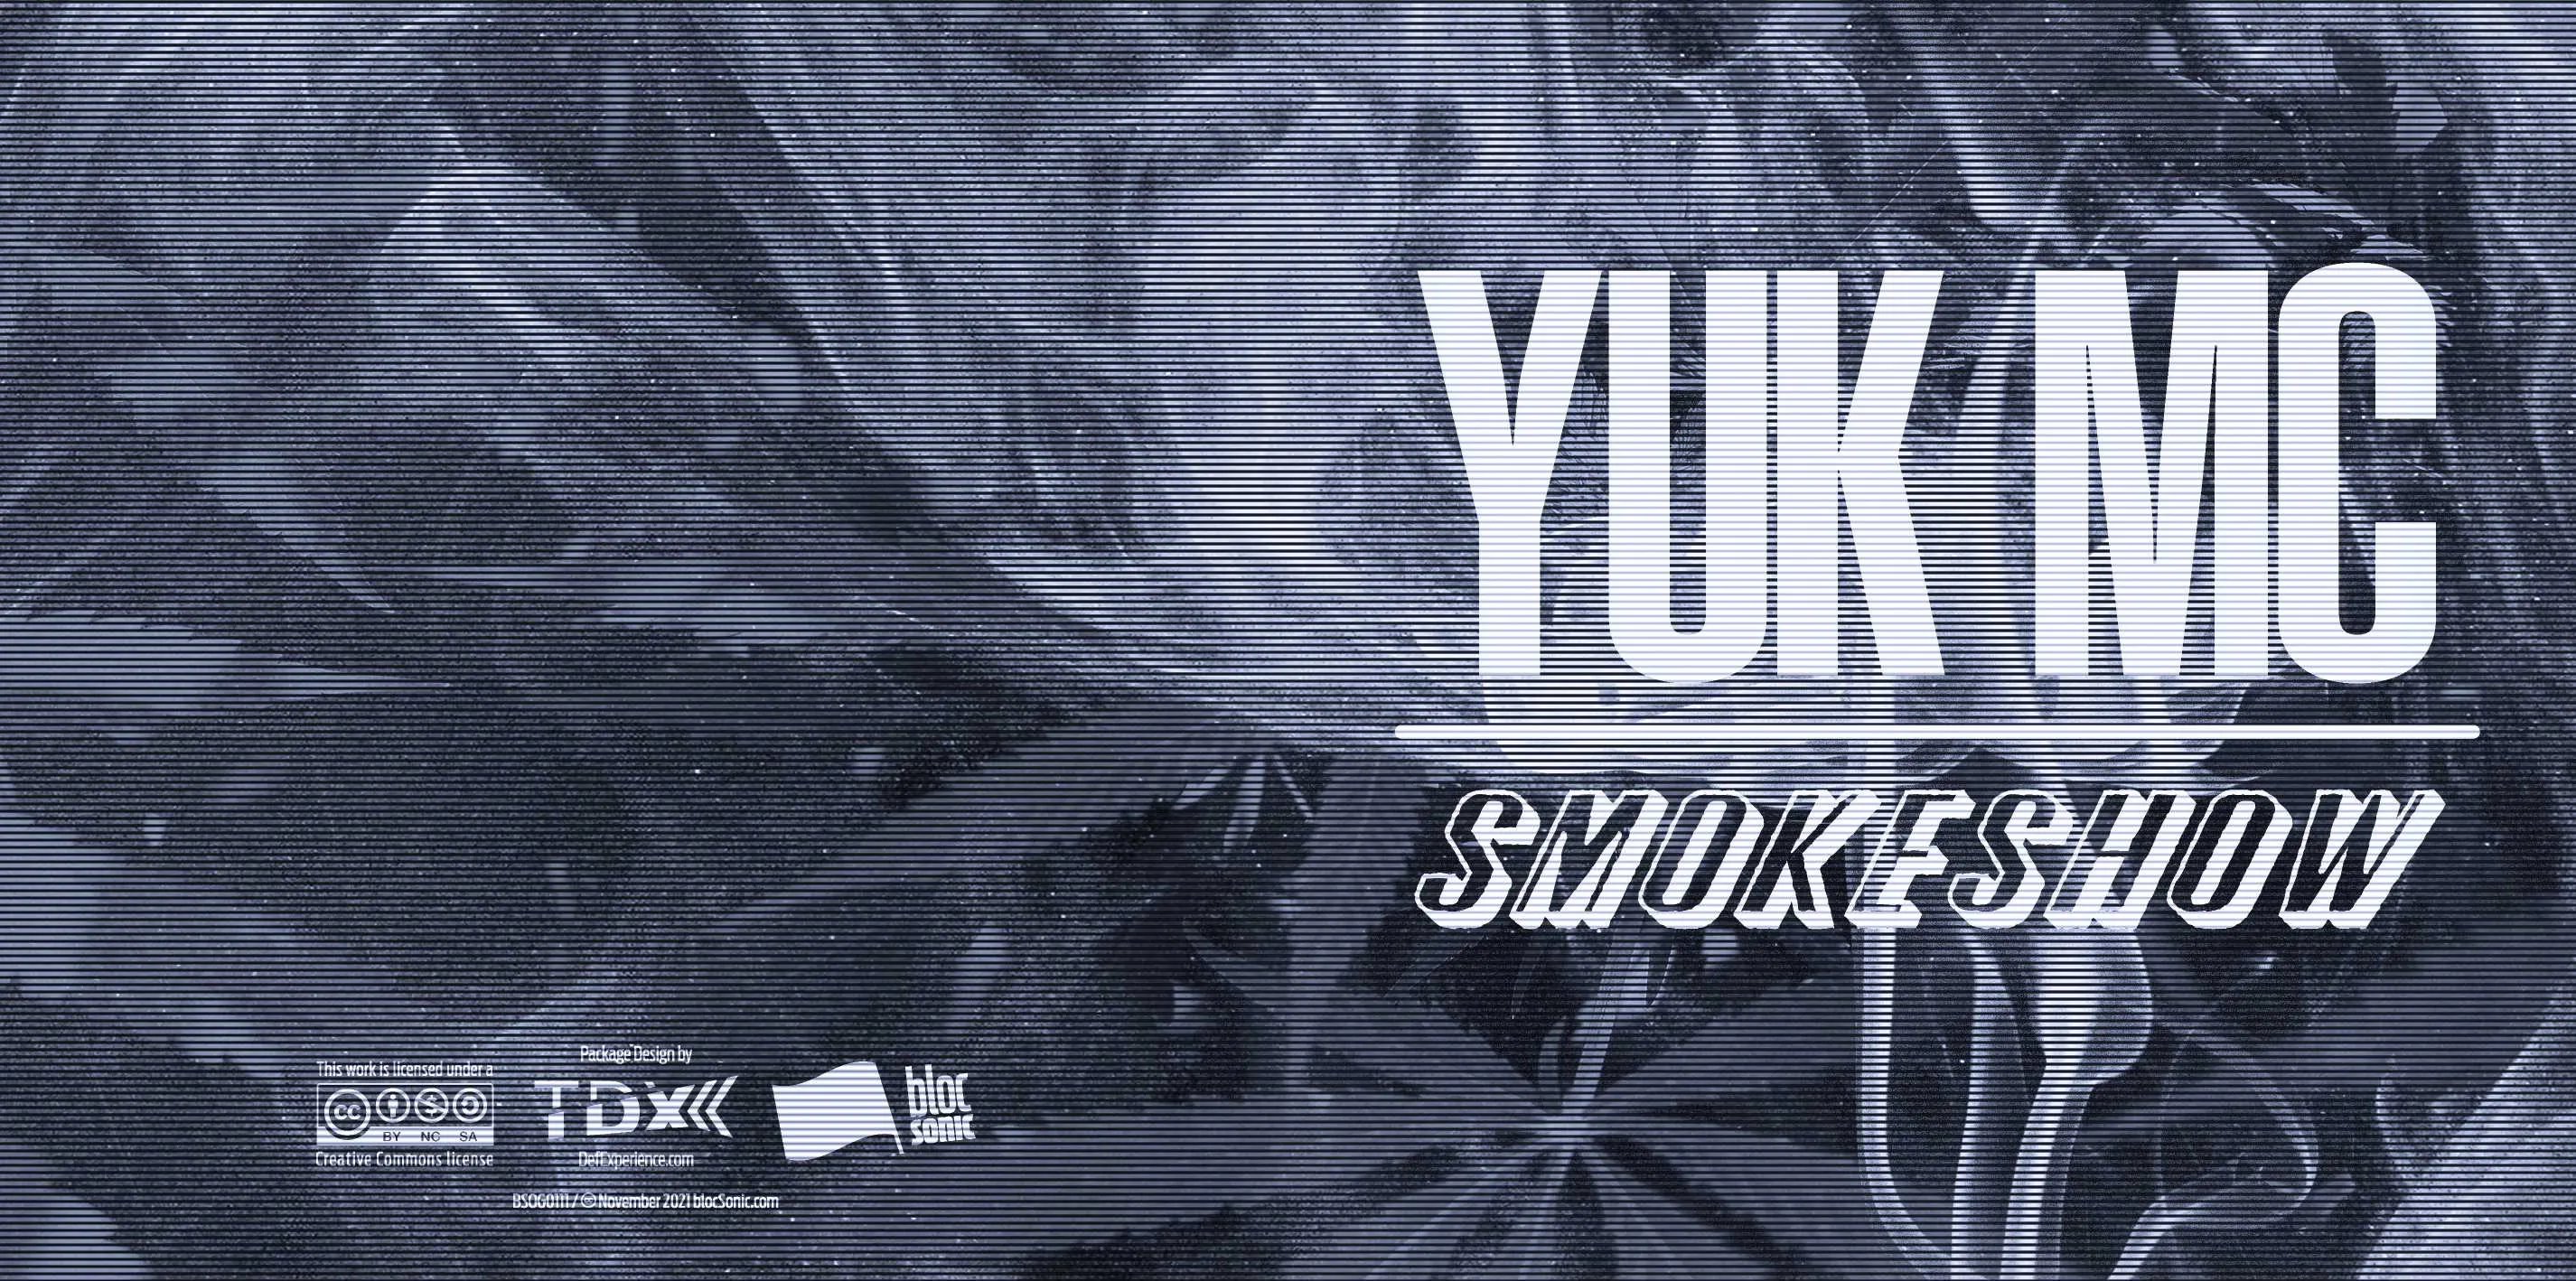 Album insert for “Smokeshow” by Yuk MC